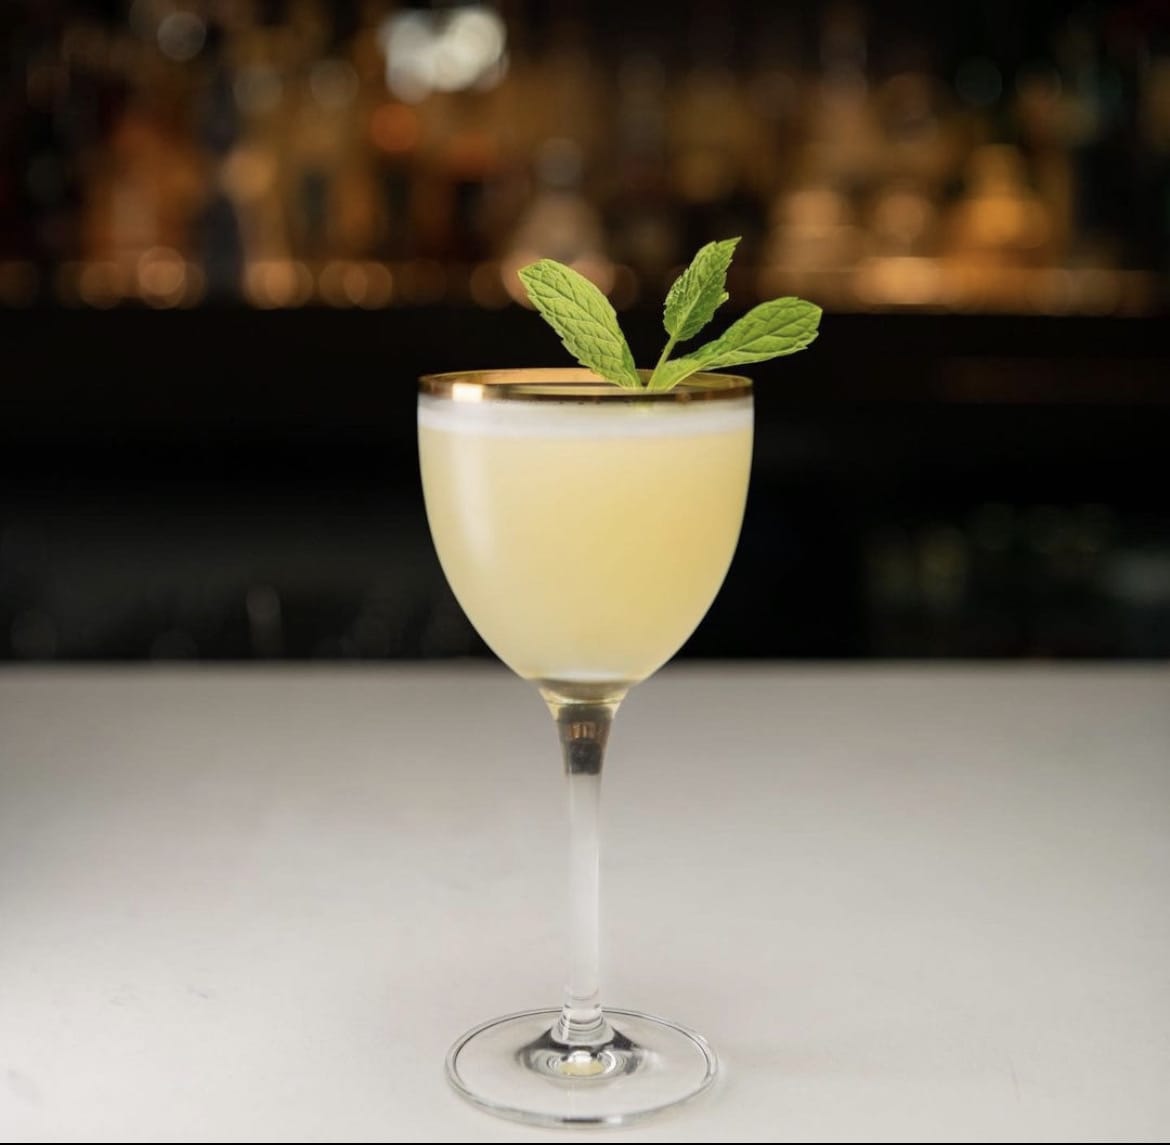 Houston cocktail bars